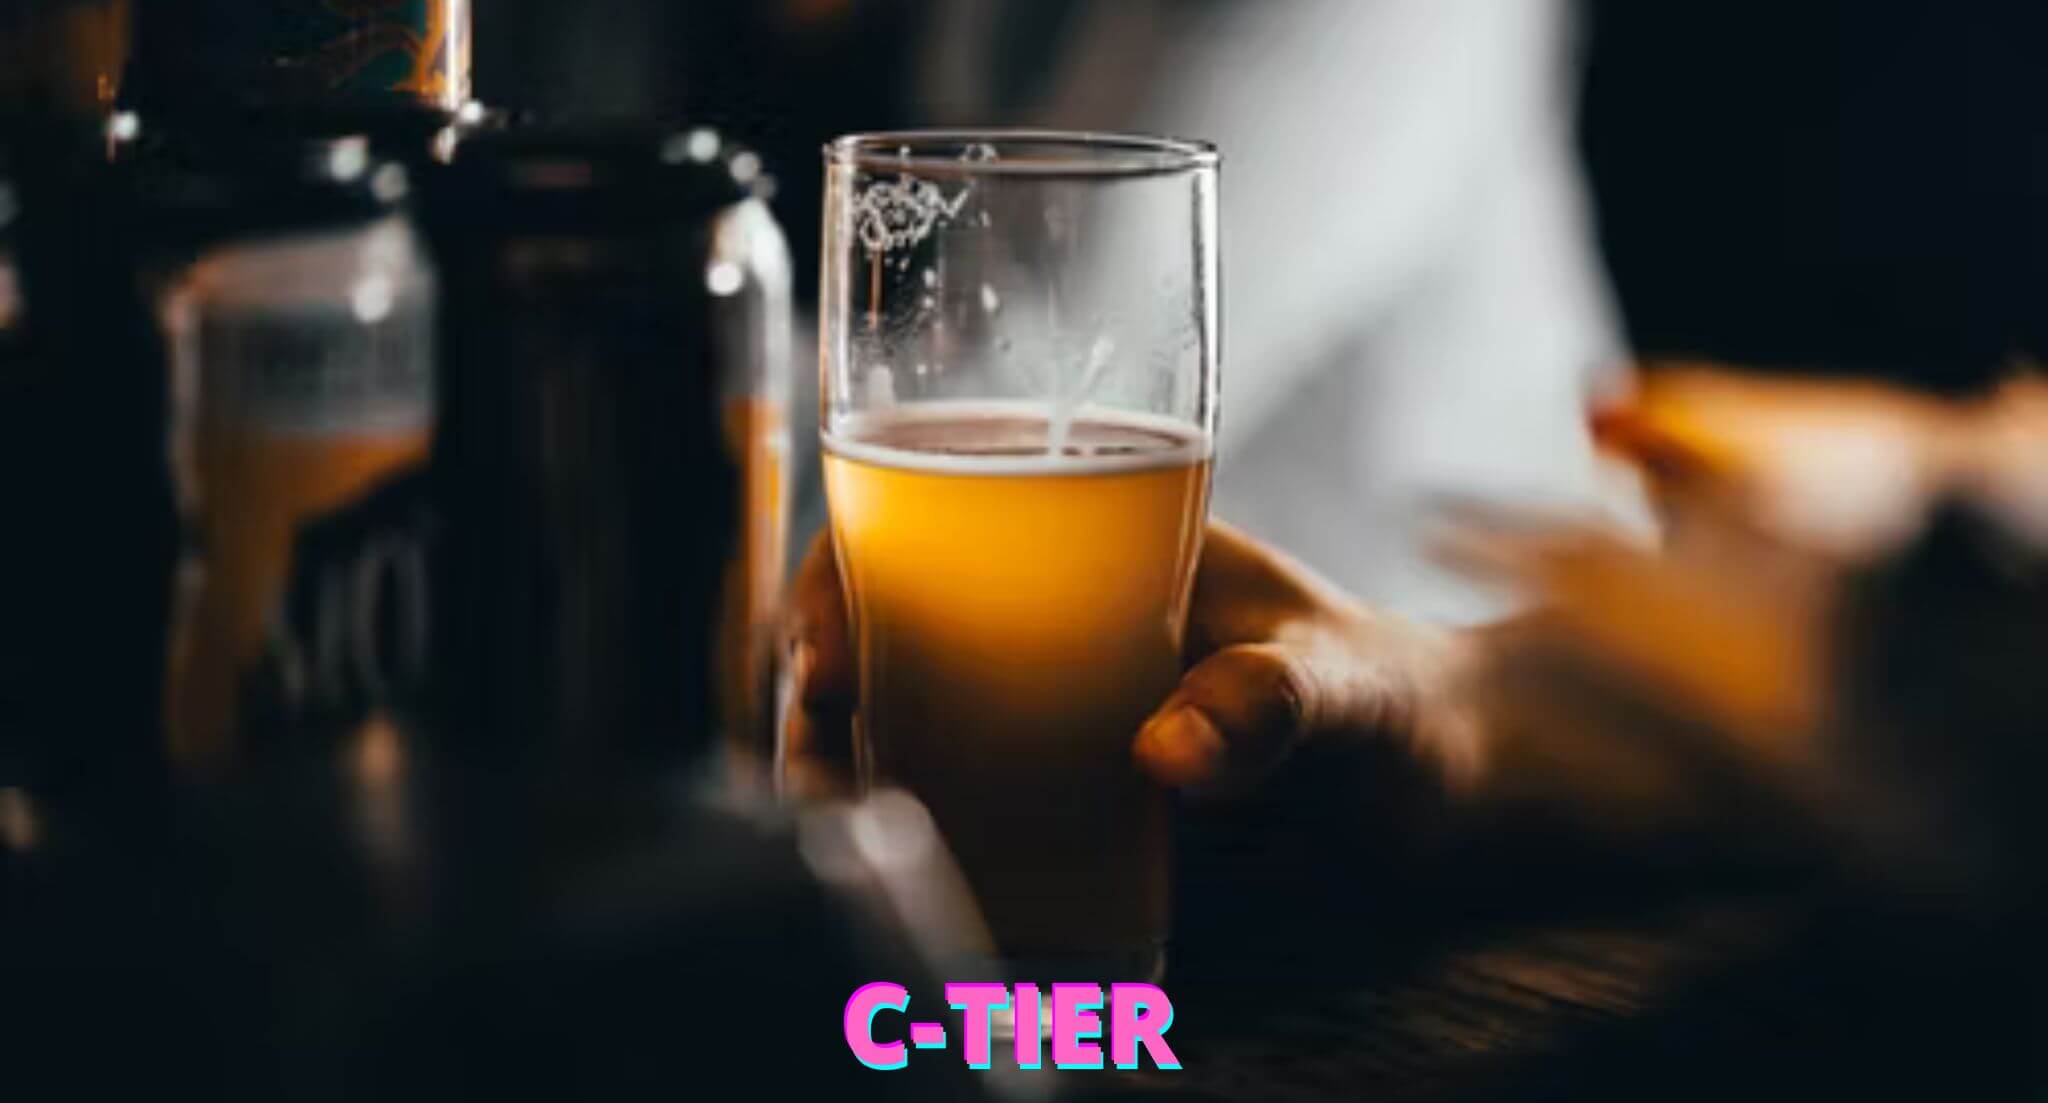 C-tier of beers